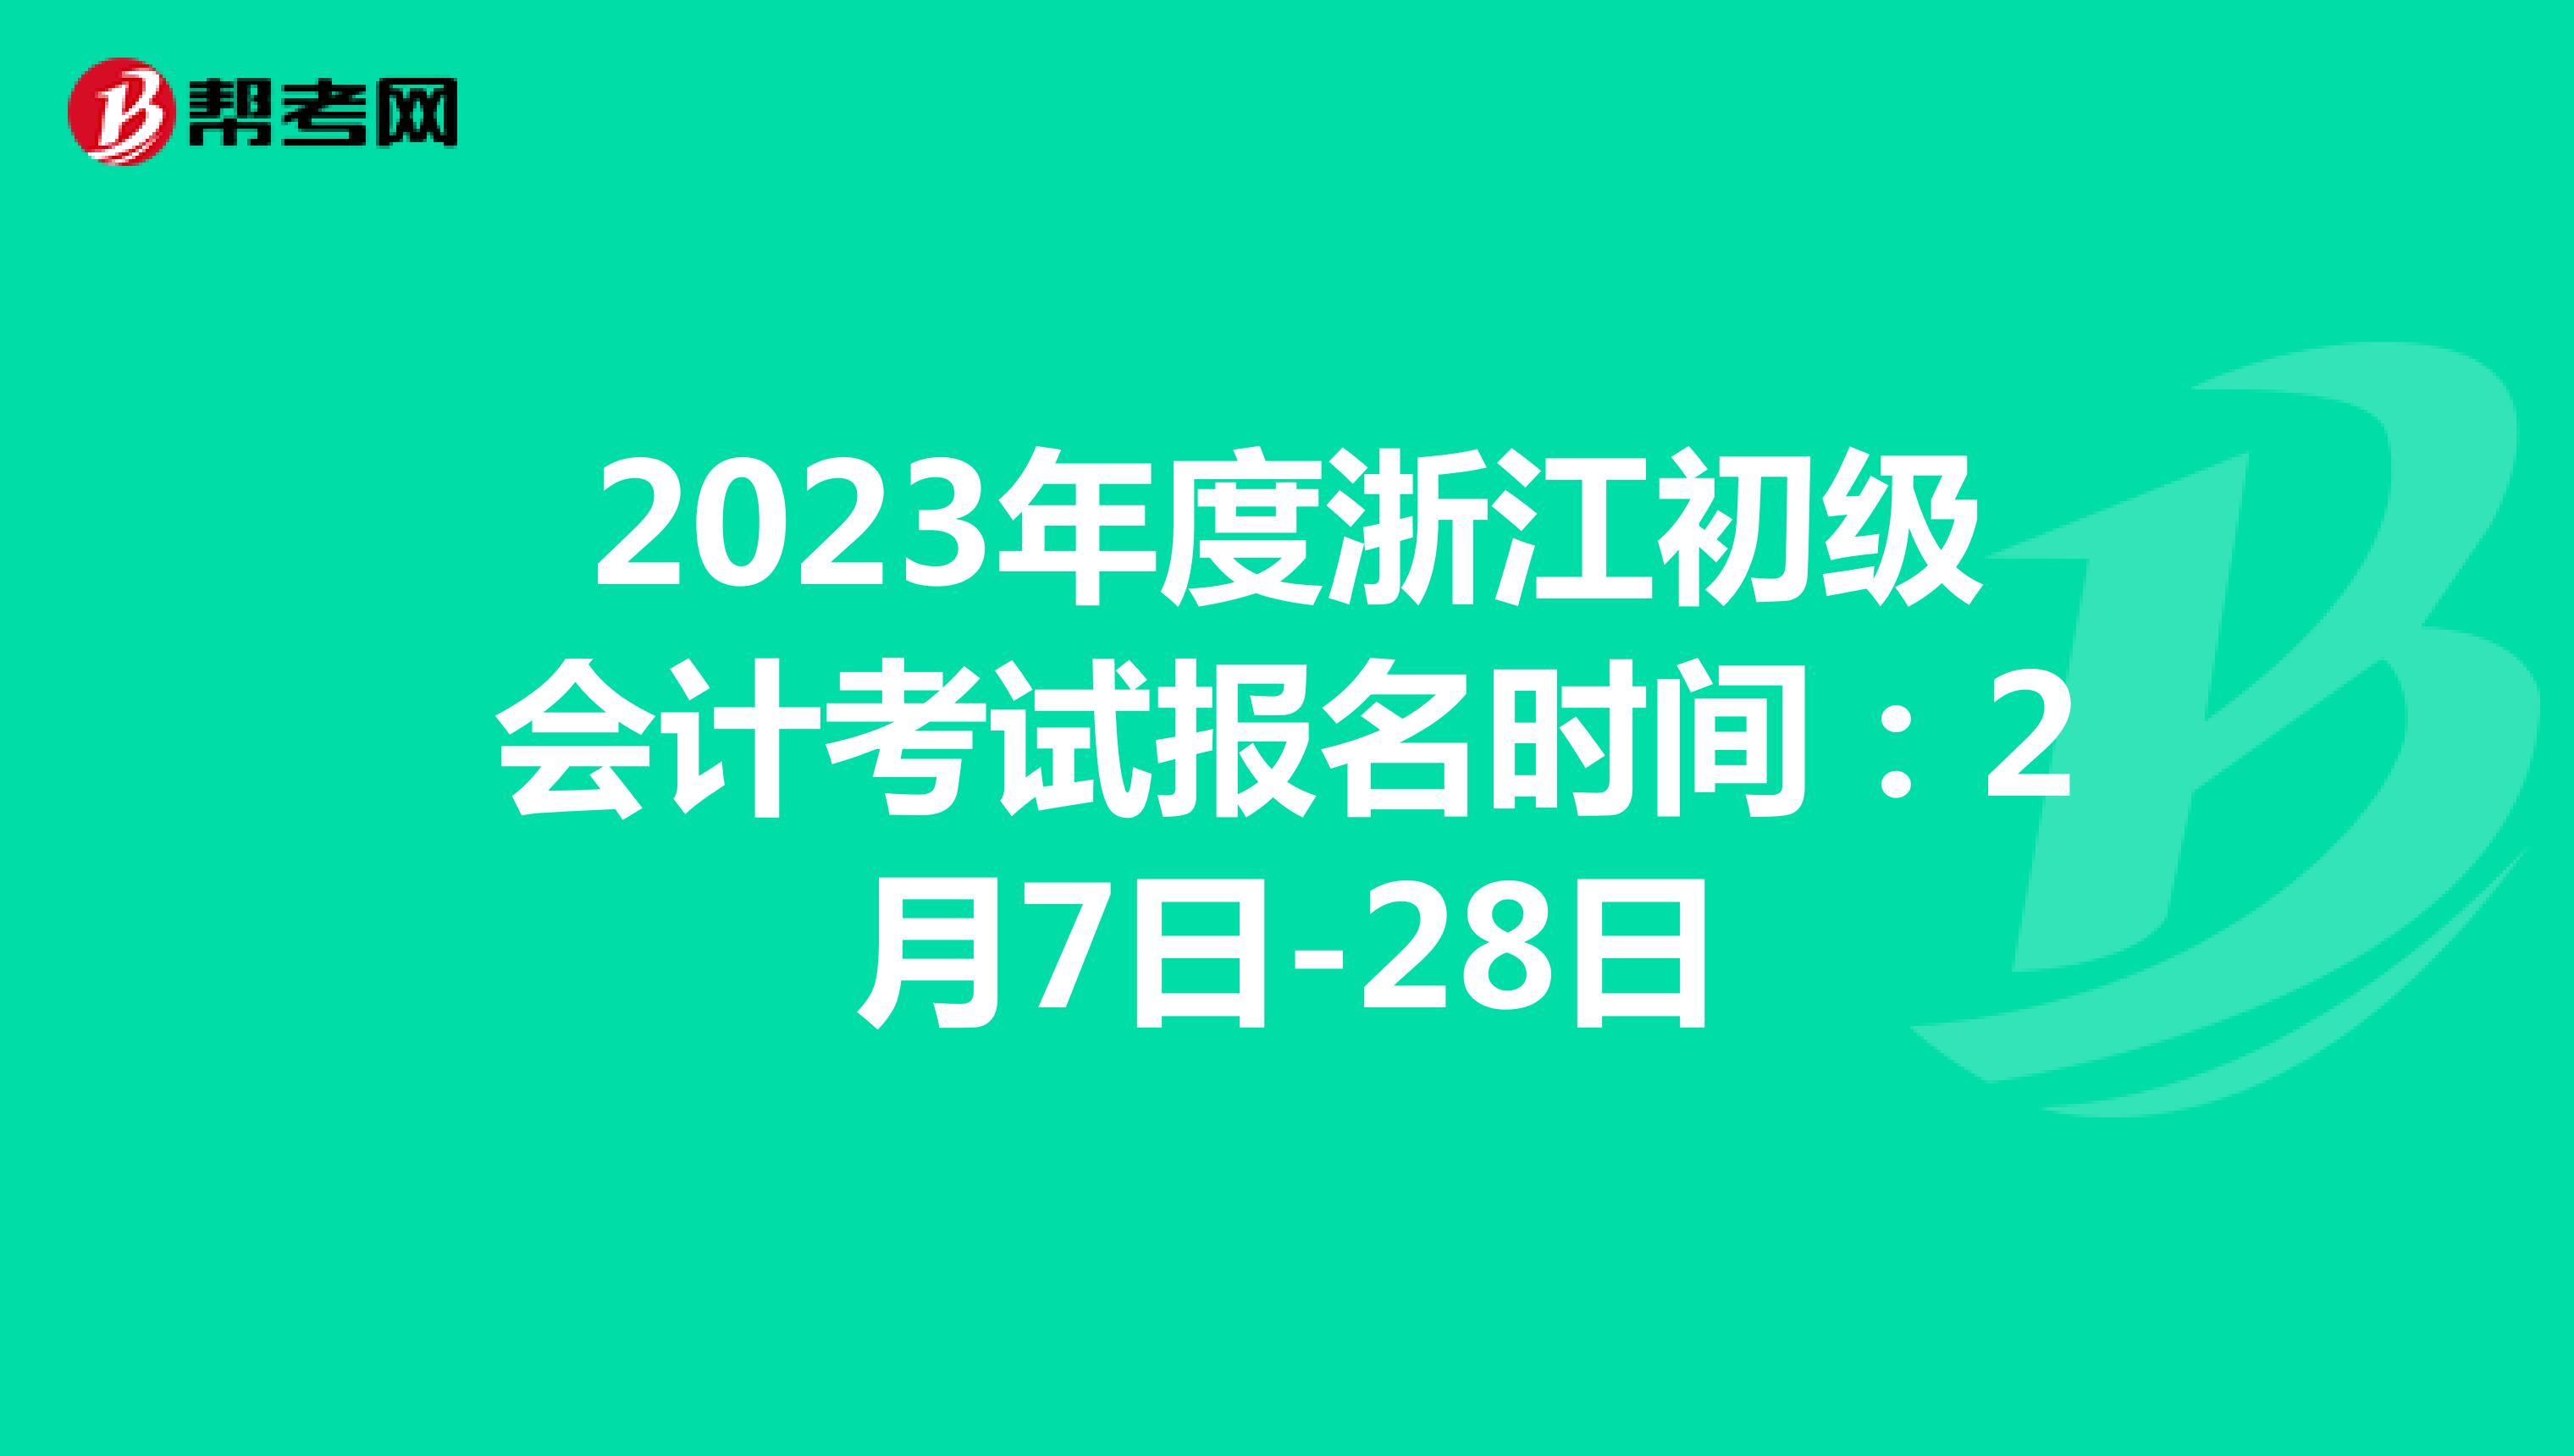 2023年度浙江初级会计考试报名时间：2月7日-28日